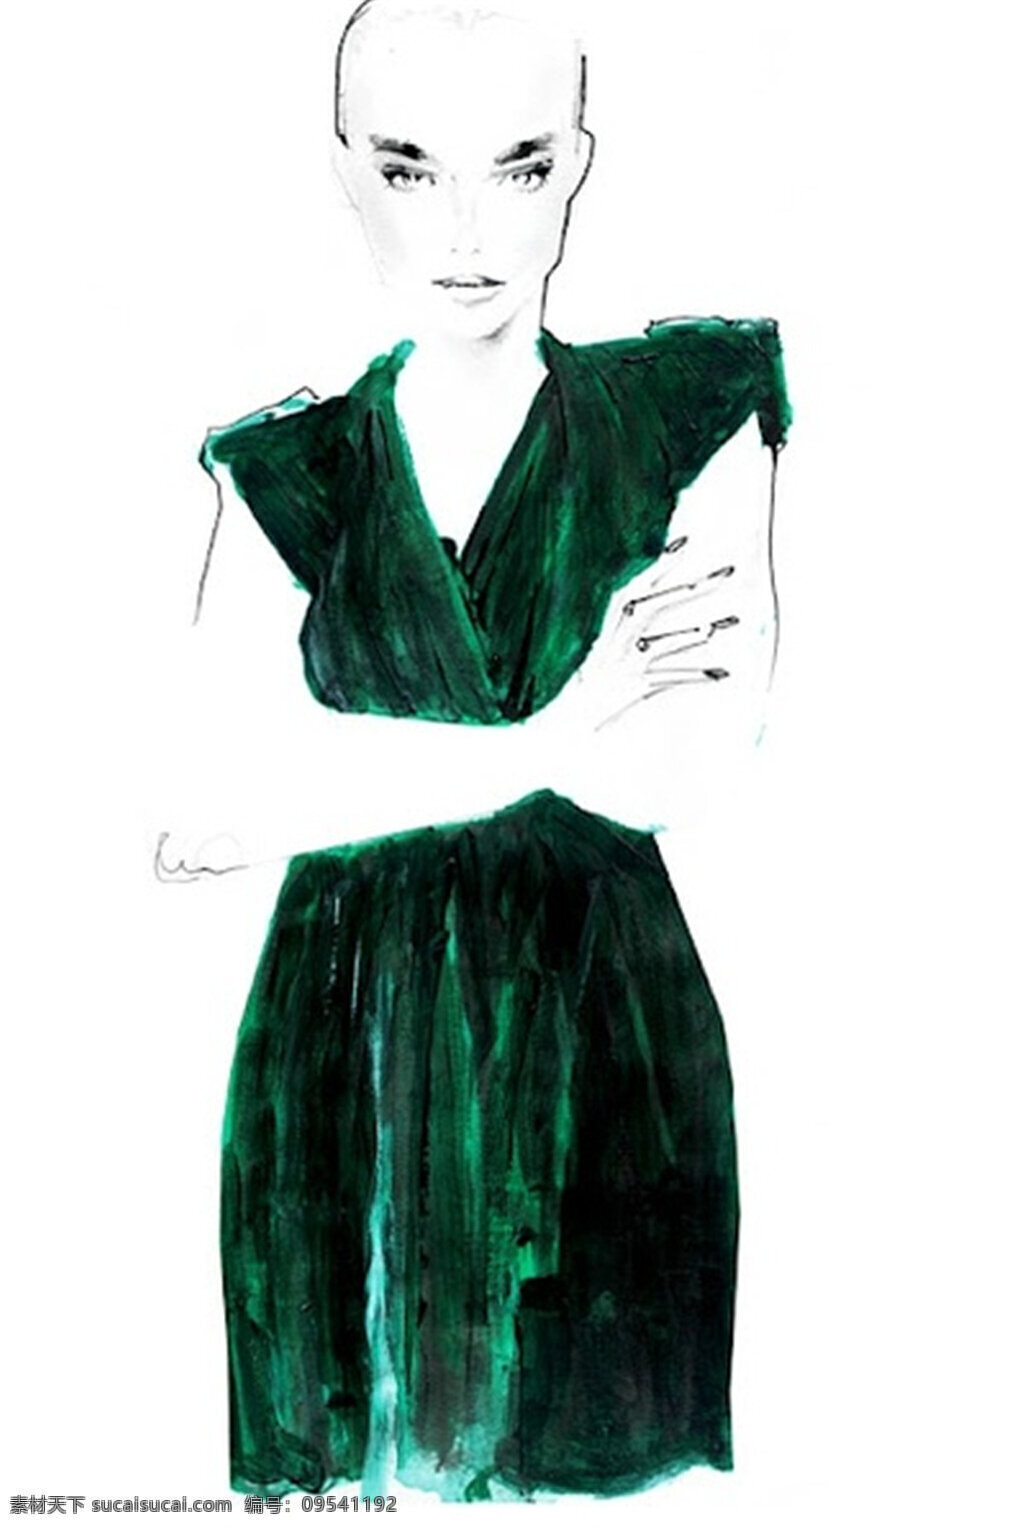 深绿色 连衣裙 设计图 服装设计 时尚女装 职业女装 职业装 女装设计 效果图 短裙 服装 服装效果图 长裙